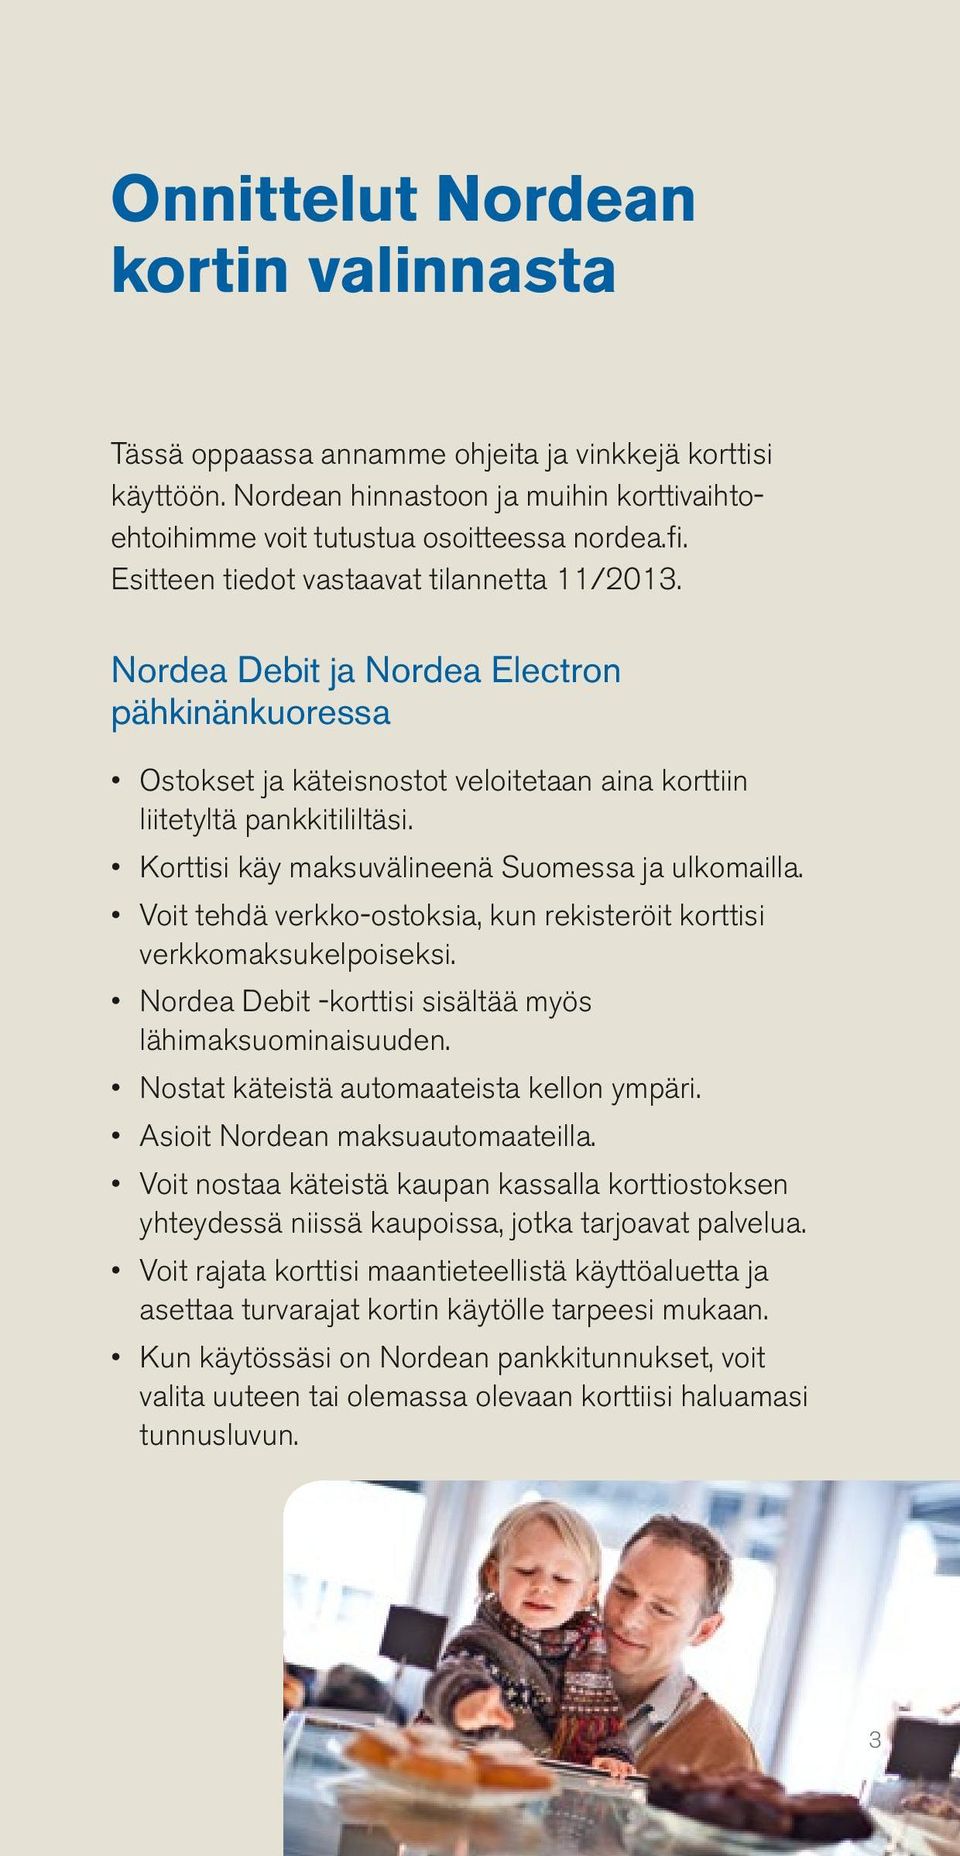 Korttisi käy maksuvälineenä Suomessa ja ulkomailla. Voit tehdä verkko-ostoksia, kun rekisteröit korttisi verkkomaksukelpoiseksi. Nordea Debit -korttisi sisältää myös lähimaksuominaisuuden.